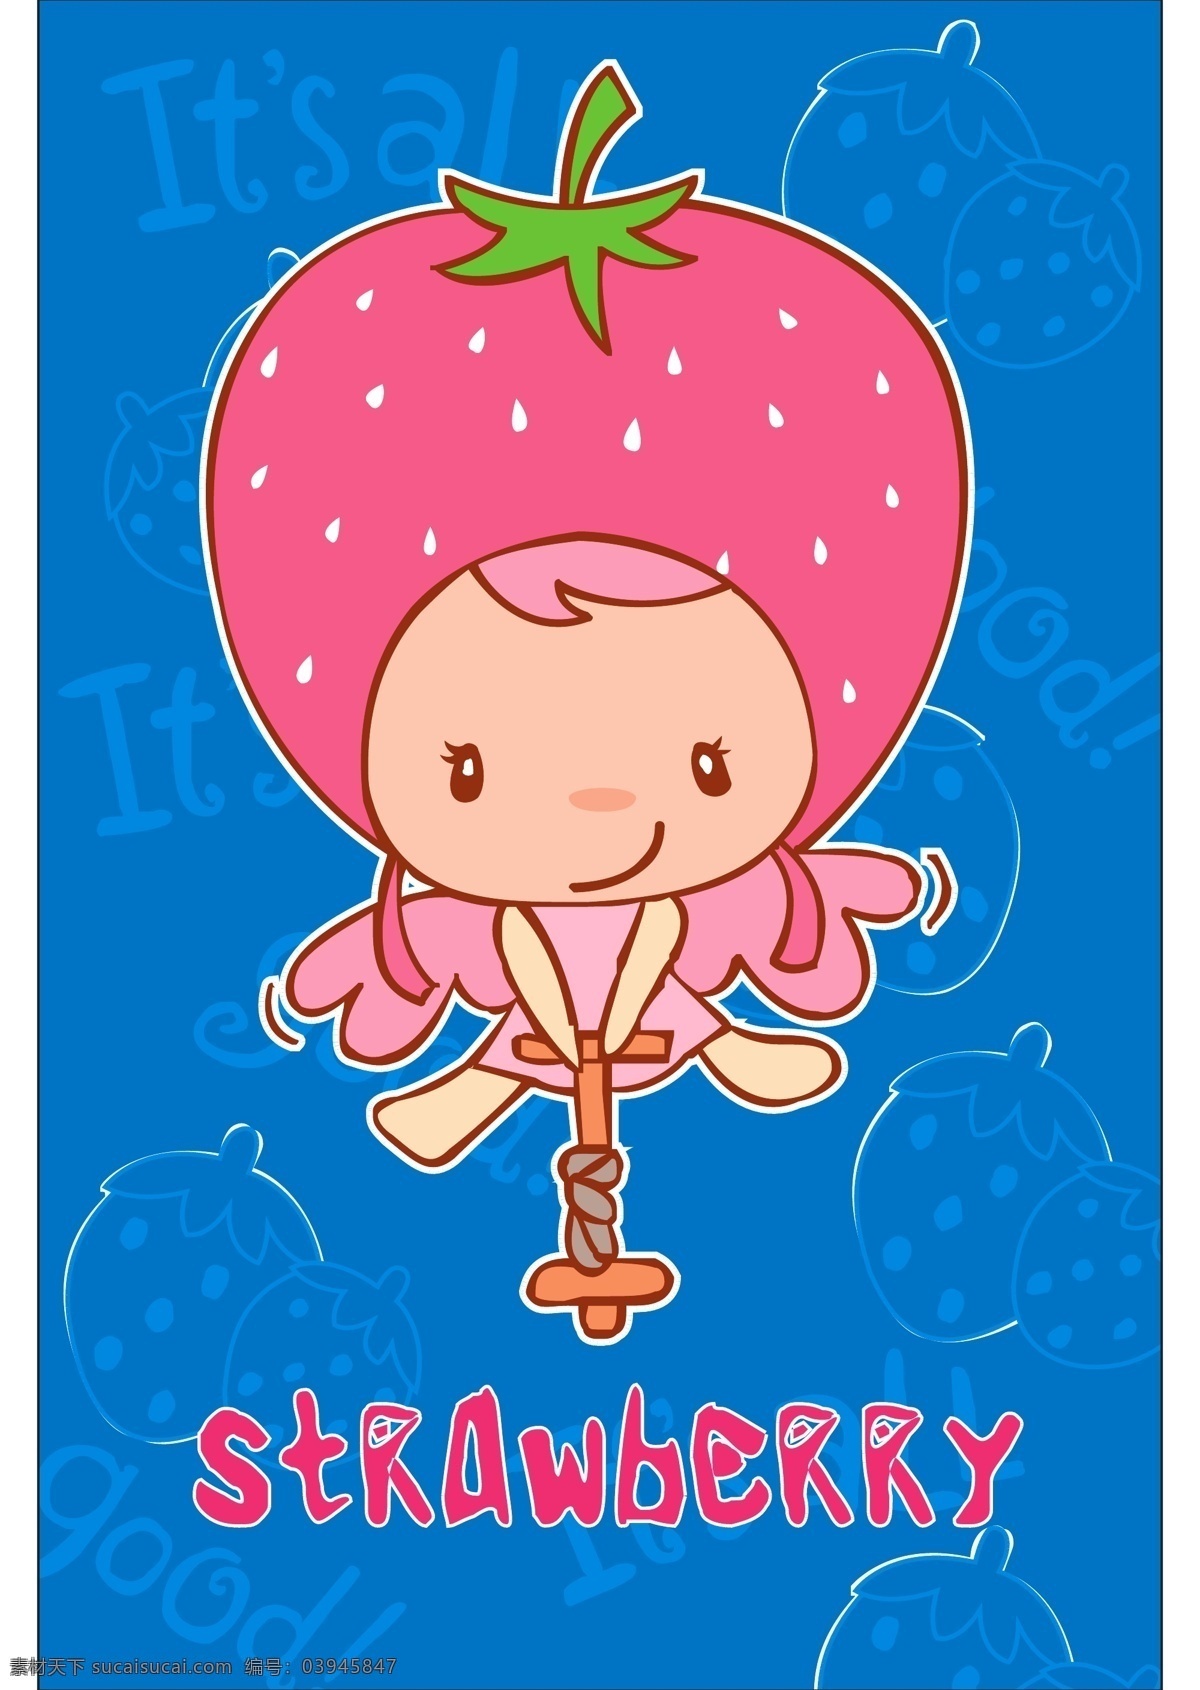 草莓女孩 草莓 卡通 小女孩 儿童 卡通图案 卡通花纹 图案设计 图案 可爱动物 可爱 儿童印花 卡通设计 矢量